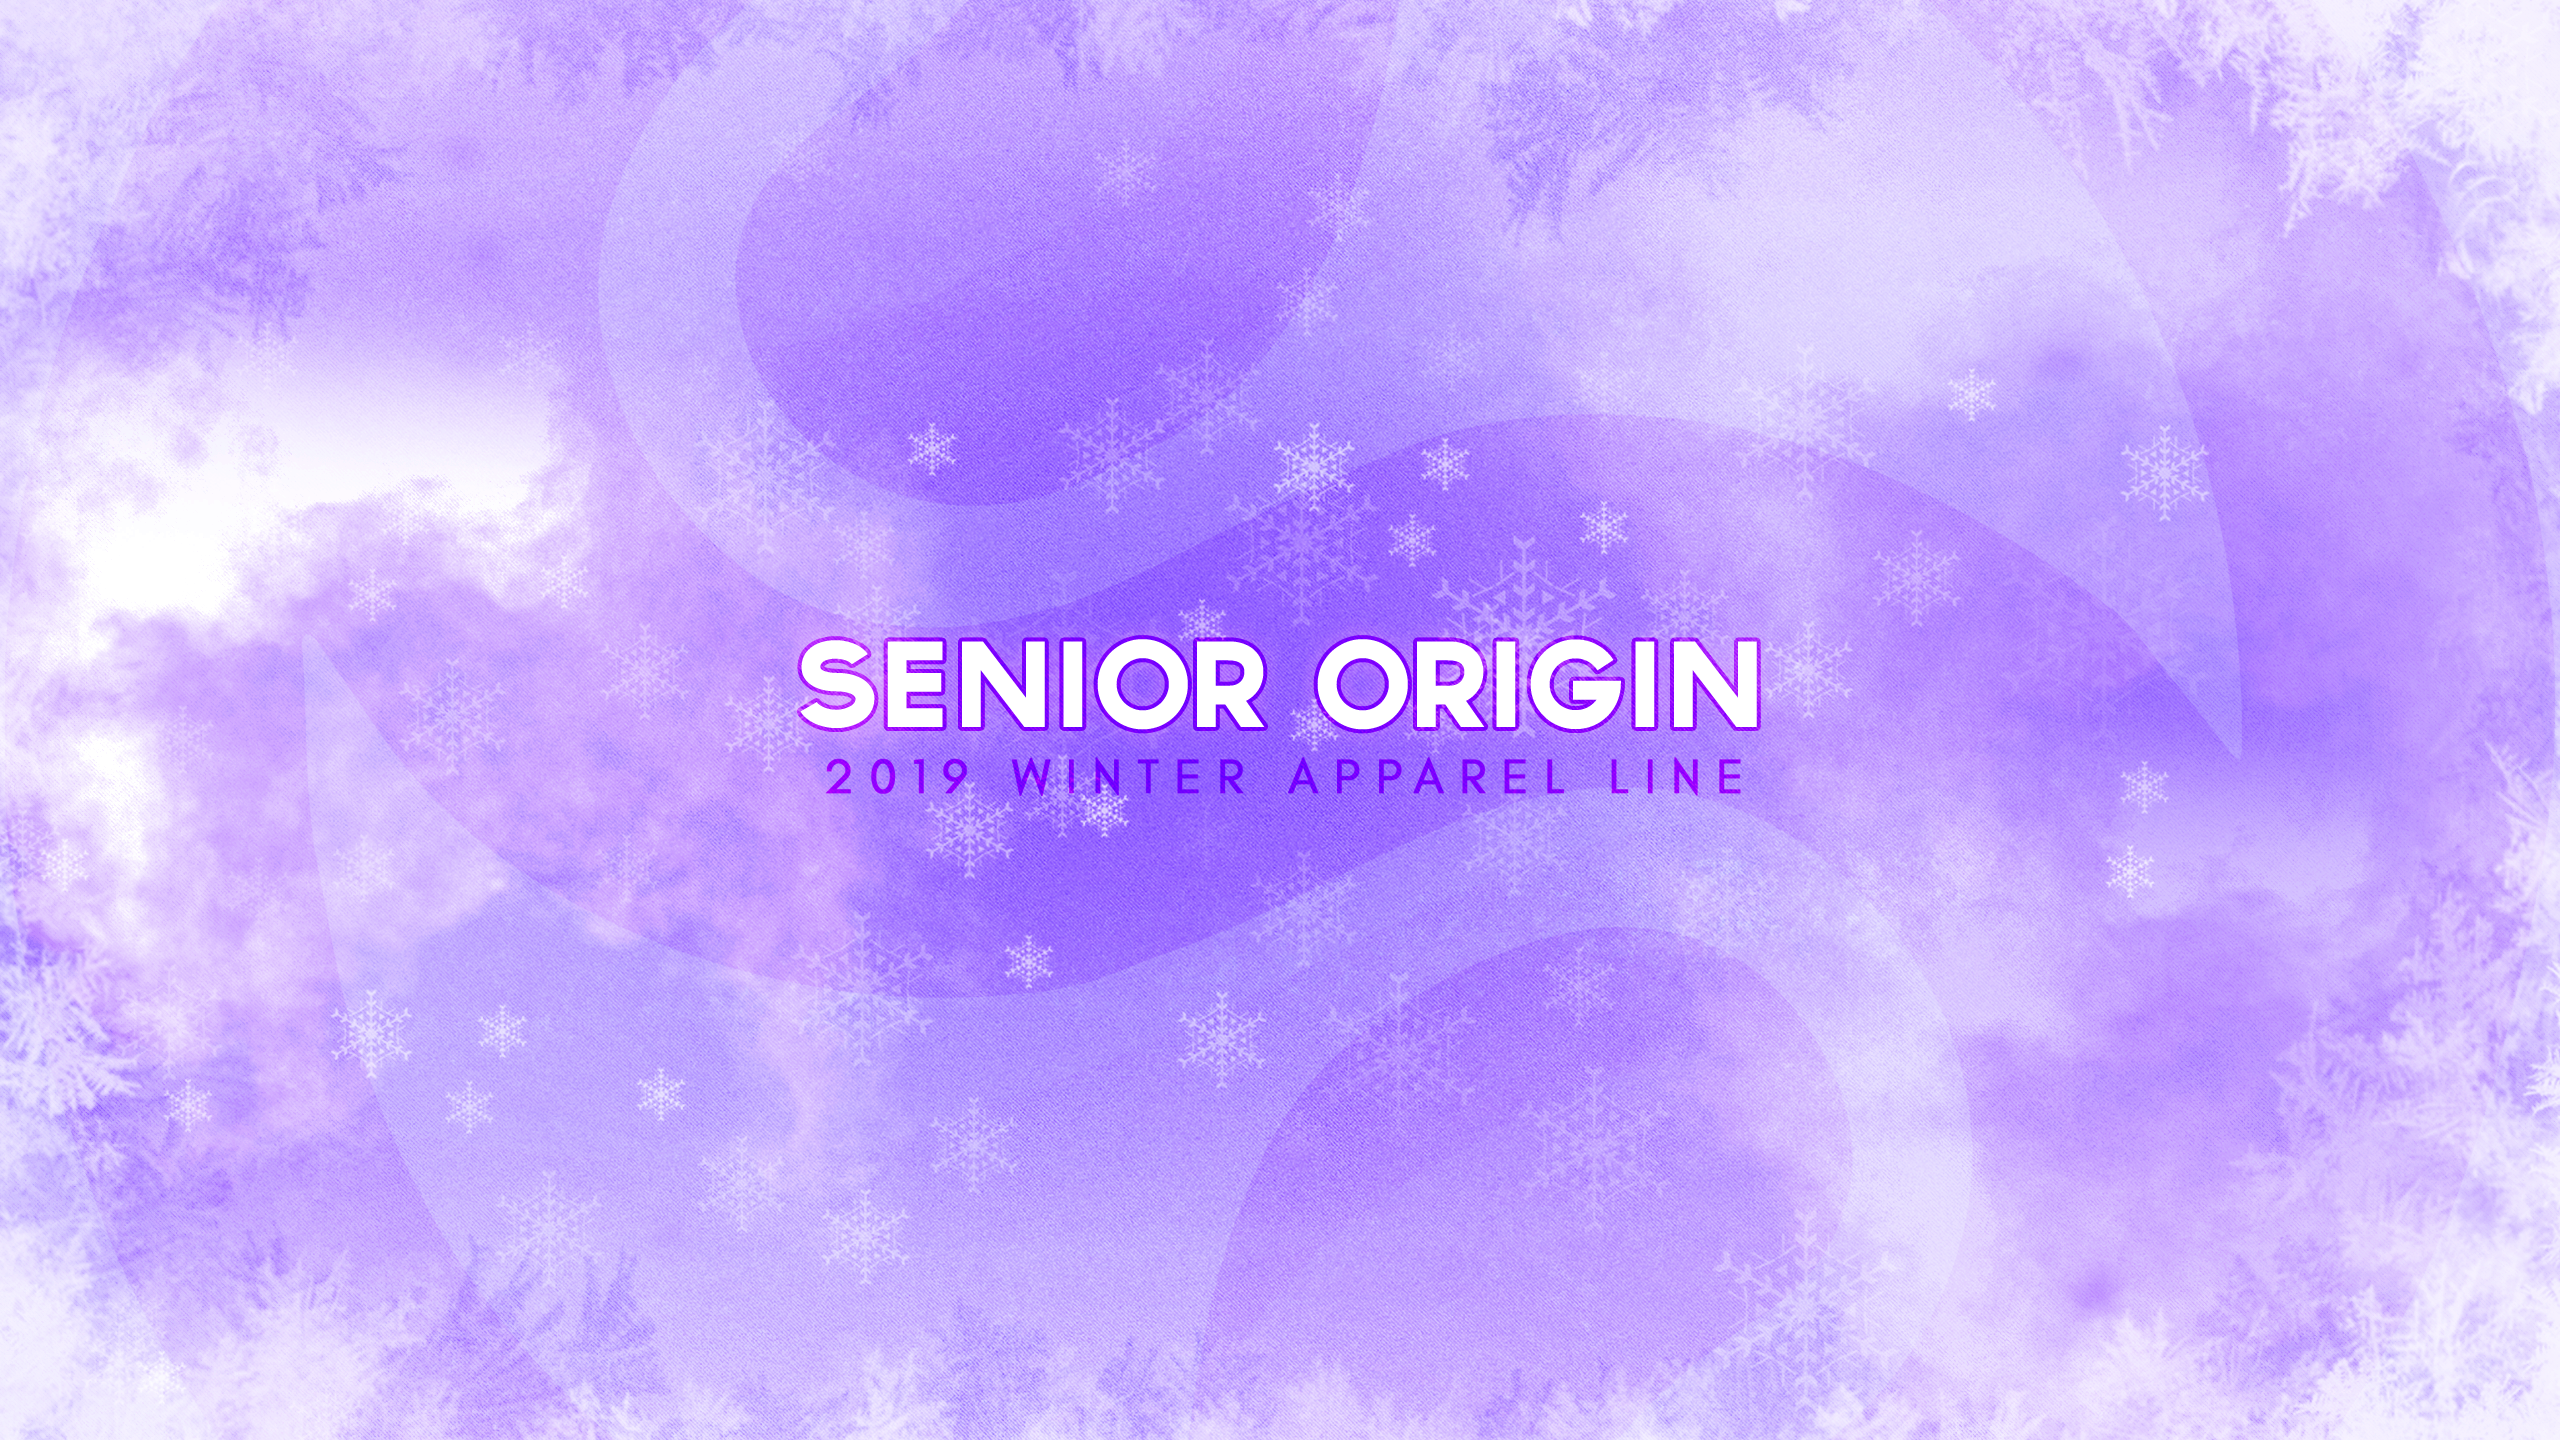 Senior Origin